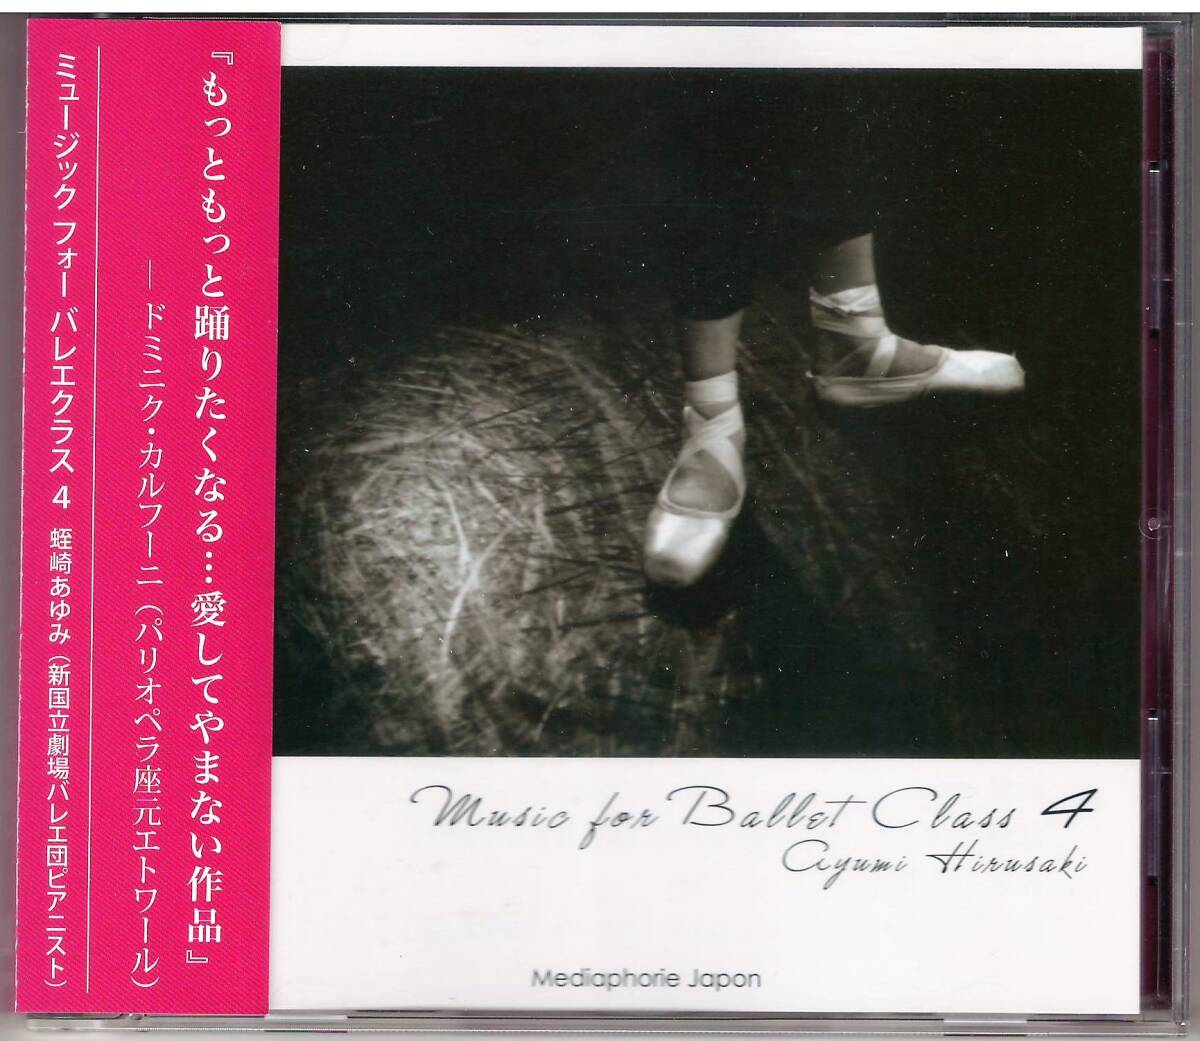 蛭崎あゆみ「Music for Ballet Class 4」CD 送料込 バレエレッスン